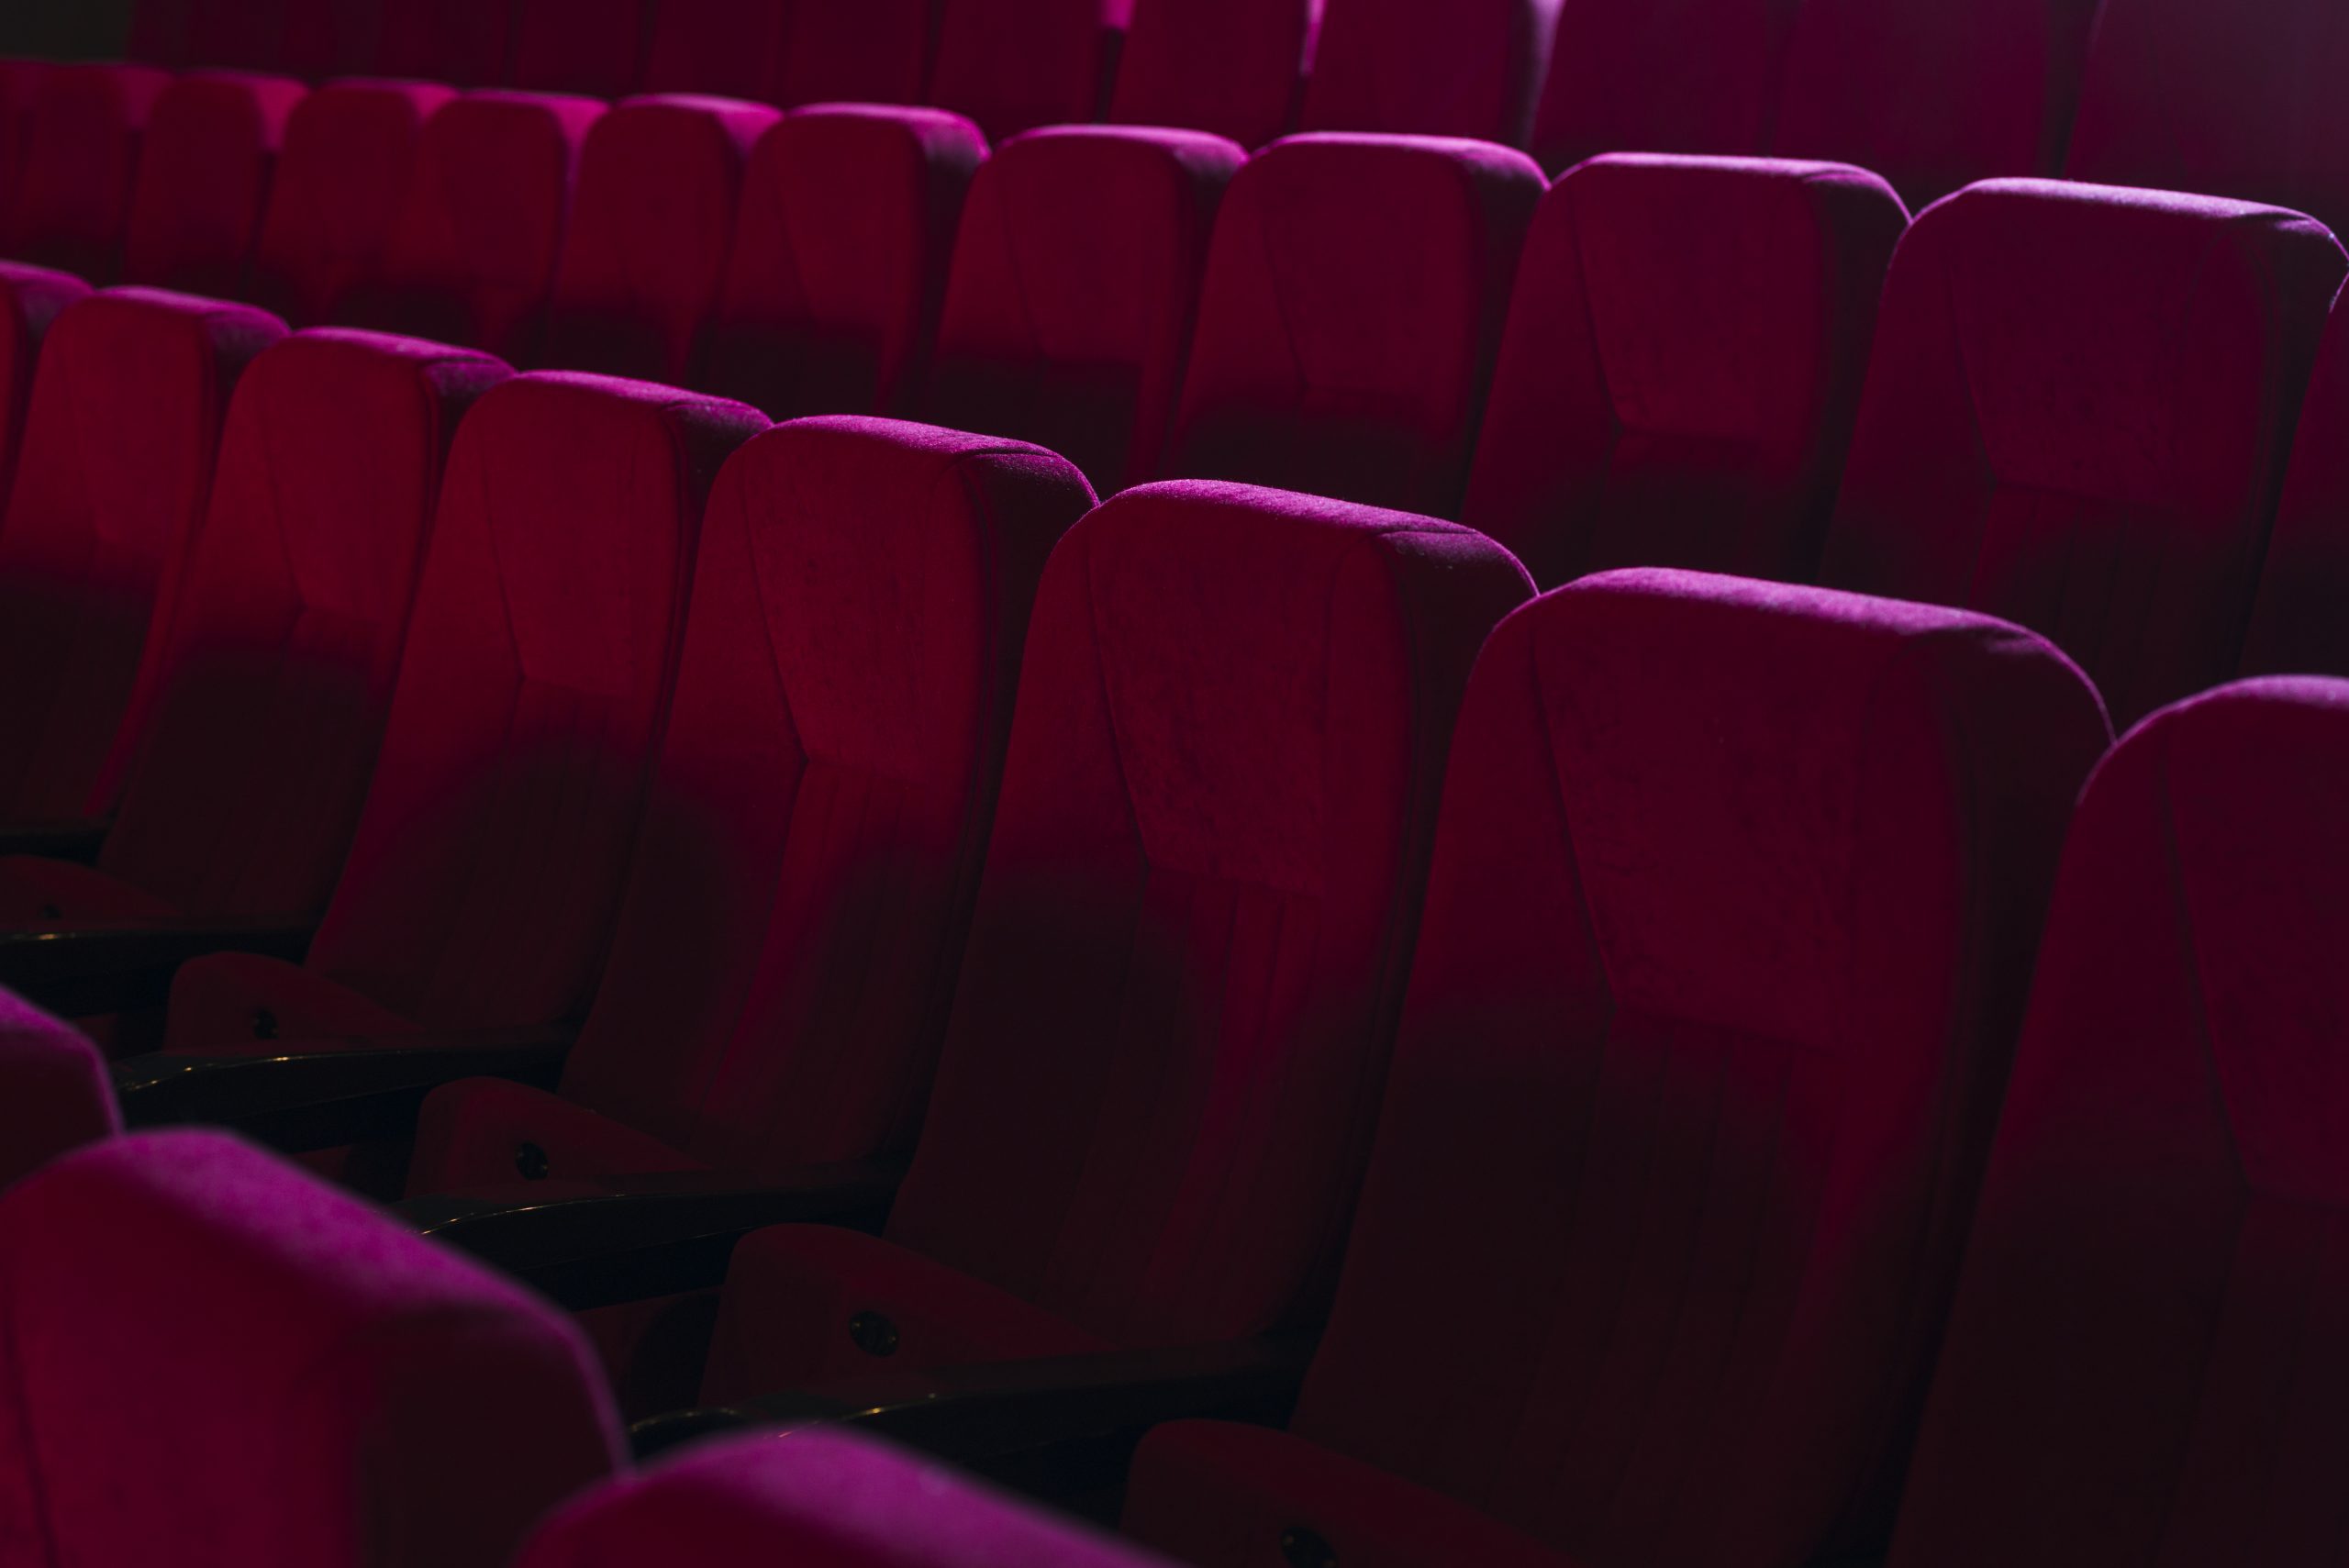 Theatre seats. Кресла в кинотеатре. Кресла для кинозала. Кинотеатр зал сиденья. Кинотеатр фон.